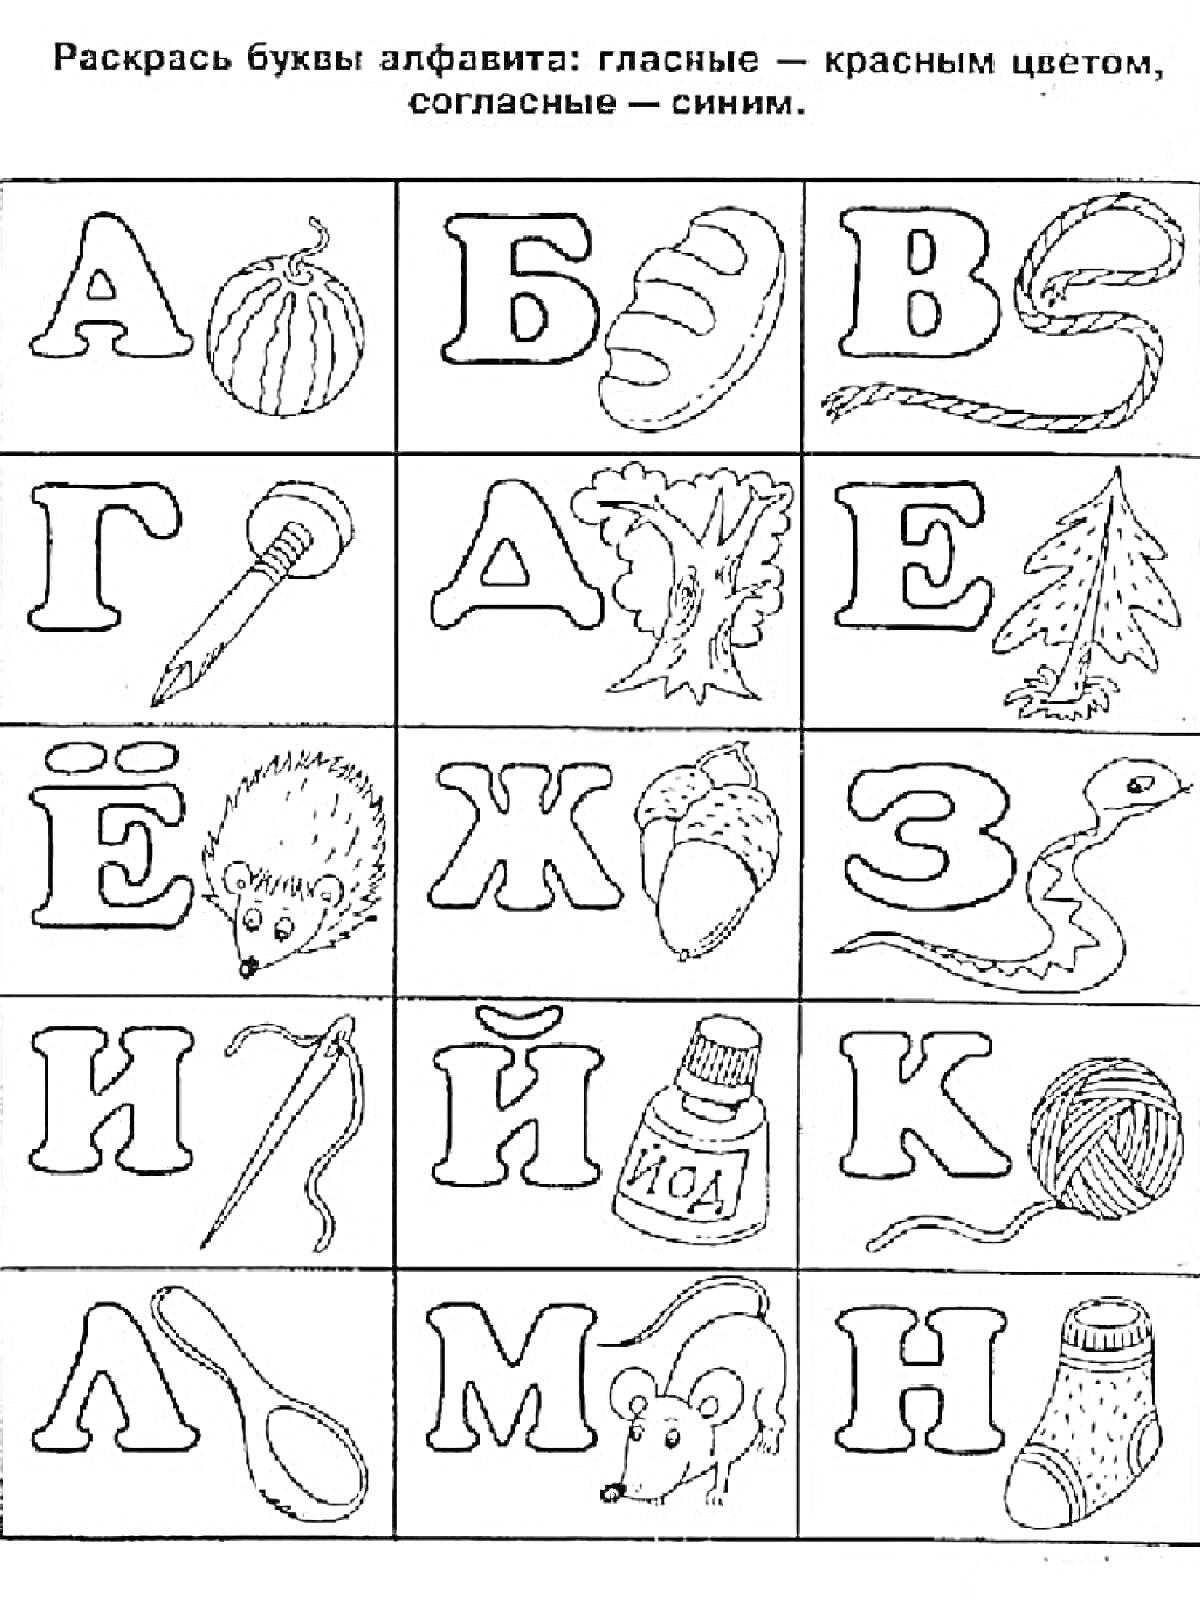 Раскраска Буквы с объектами: арбуз, булка, верёвка, гаечный ключ, ёж, желудь, змея, иголка, йод, клубок, ложка, мышь, носок